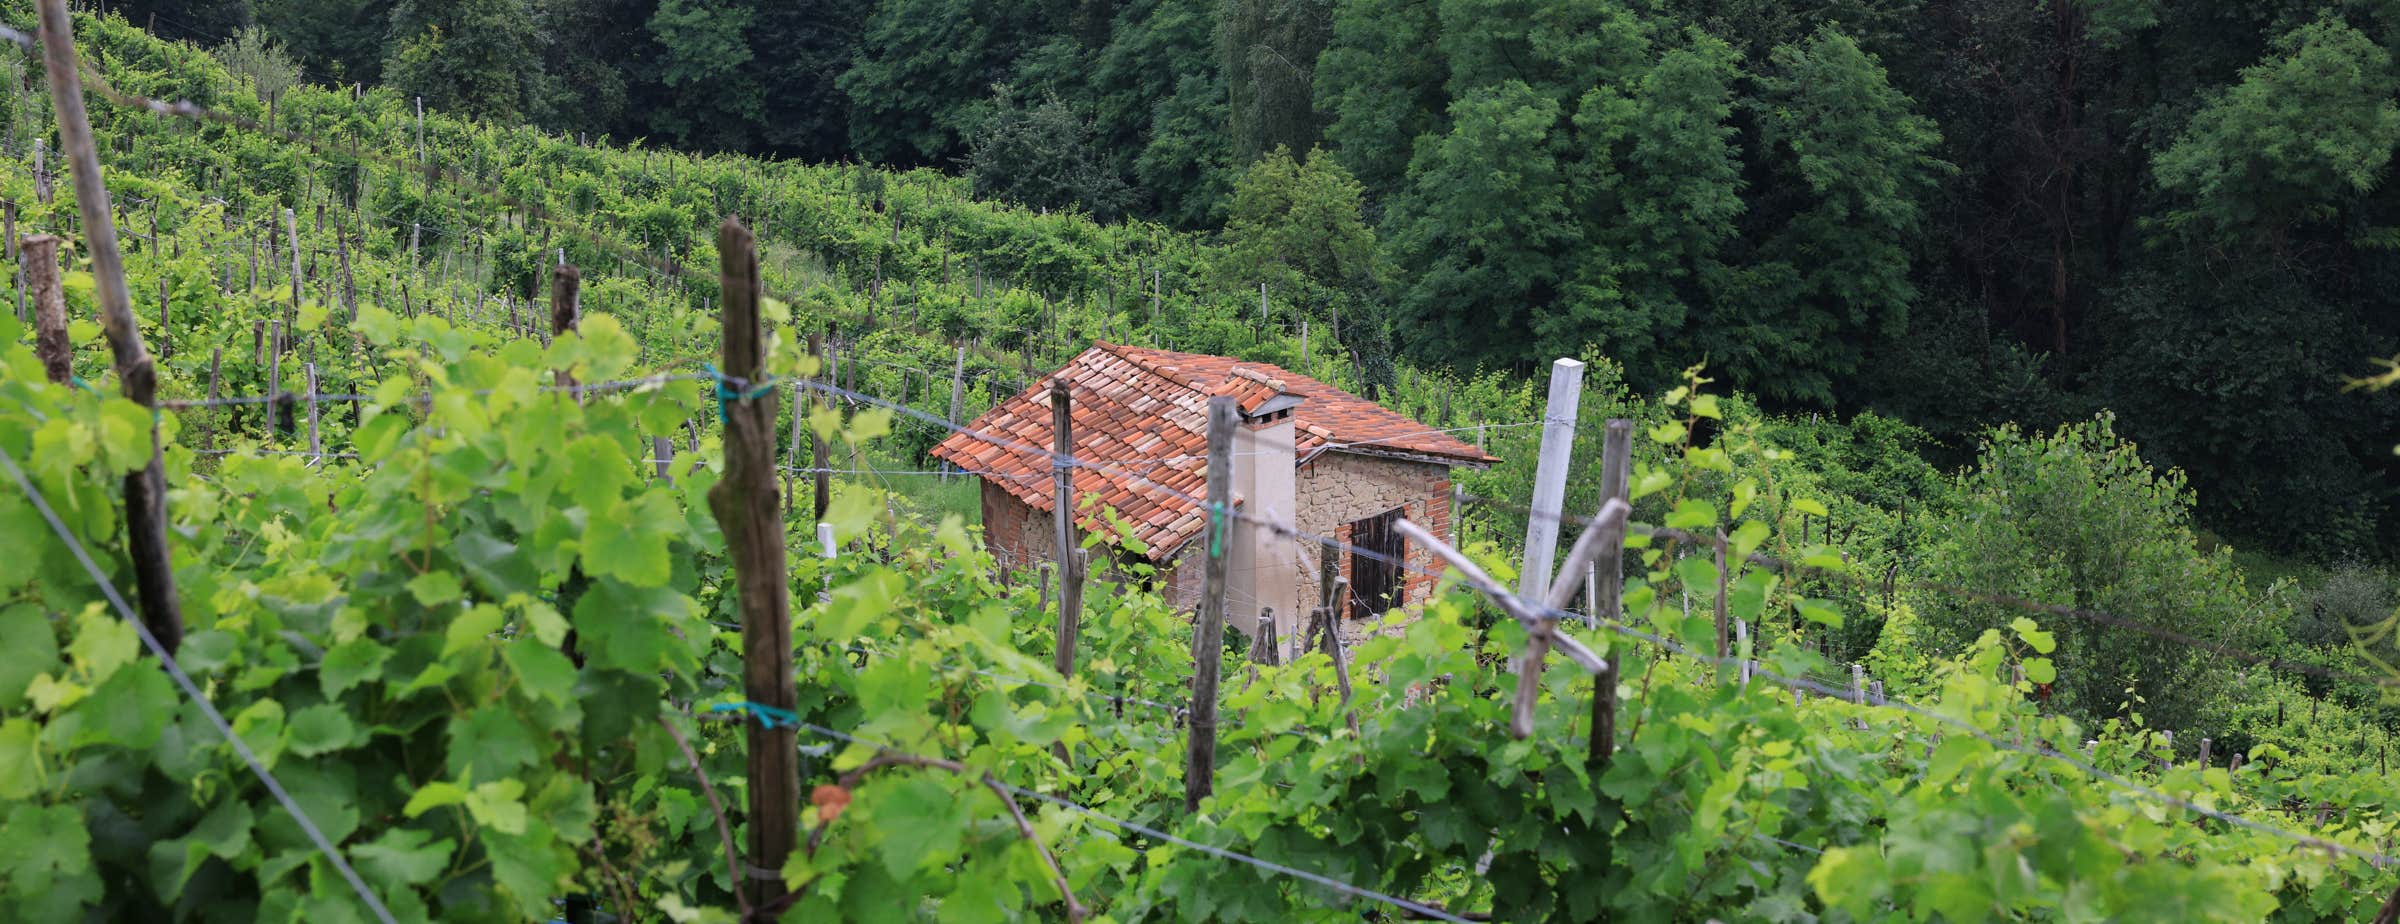 Das Bild wurde mitten in einem Weinberg aufgenommen. Man schaut von oben auf ein altes kleines Haus für Weinbergarbeiter. Das Haus ist dicht umwachsen von Weinstöcken und im Hintergrund sind tiefgrüne Laubbäume zu erkennen.